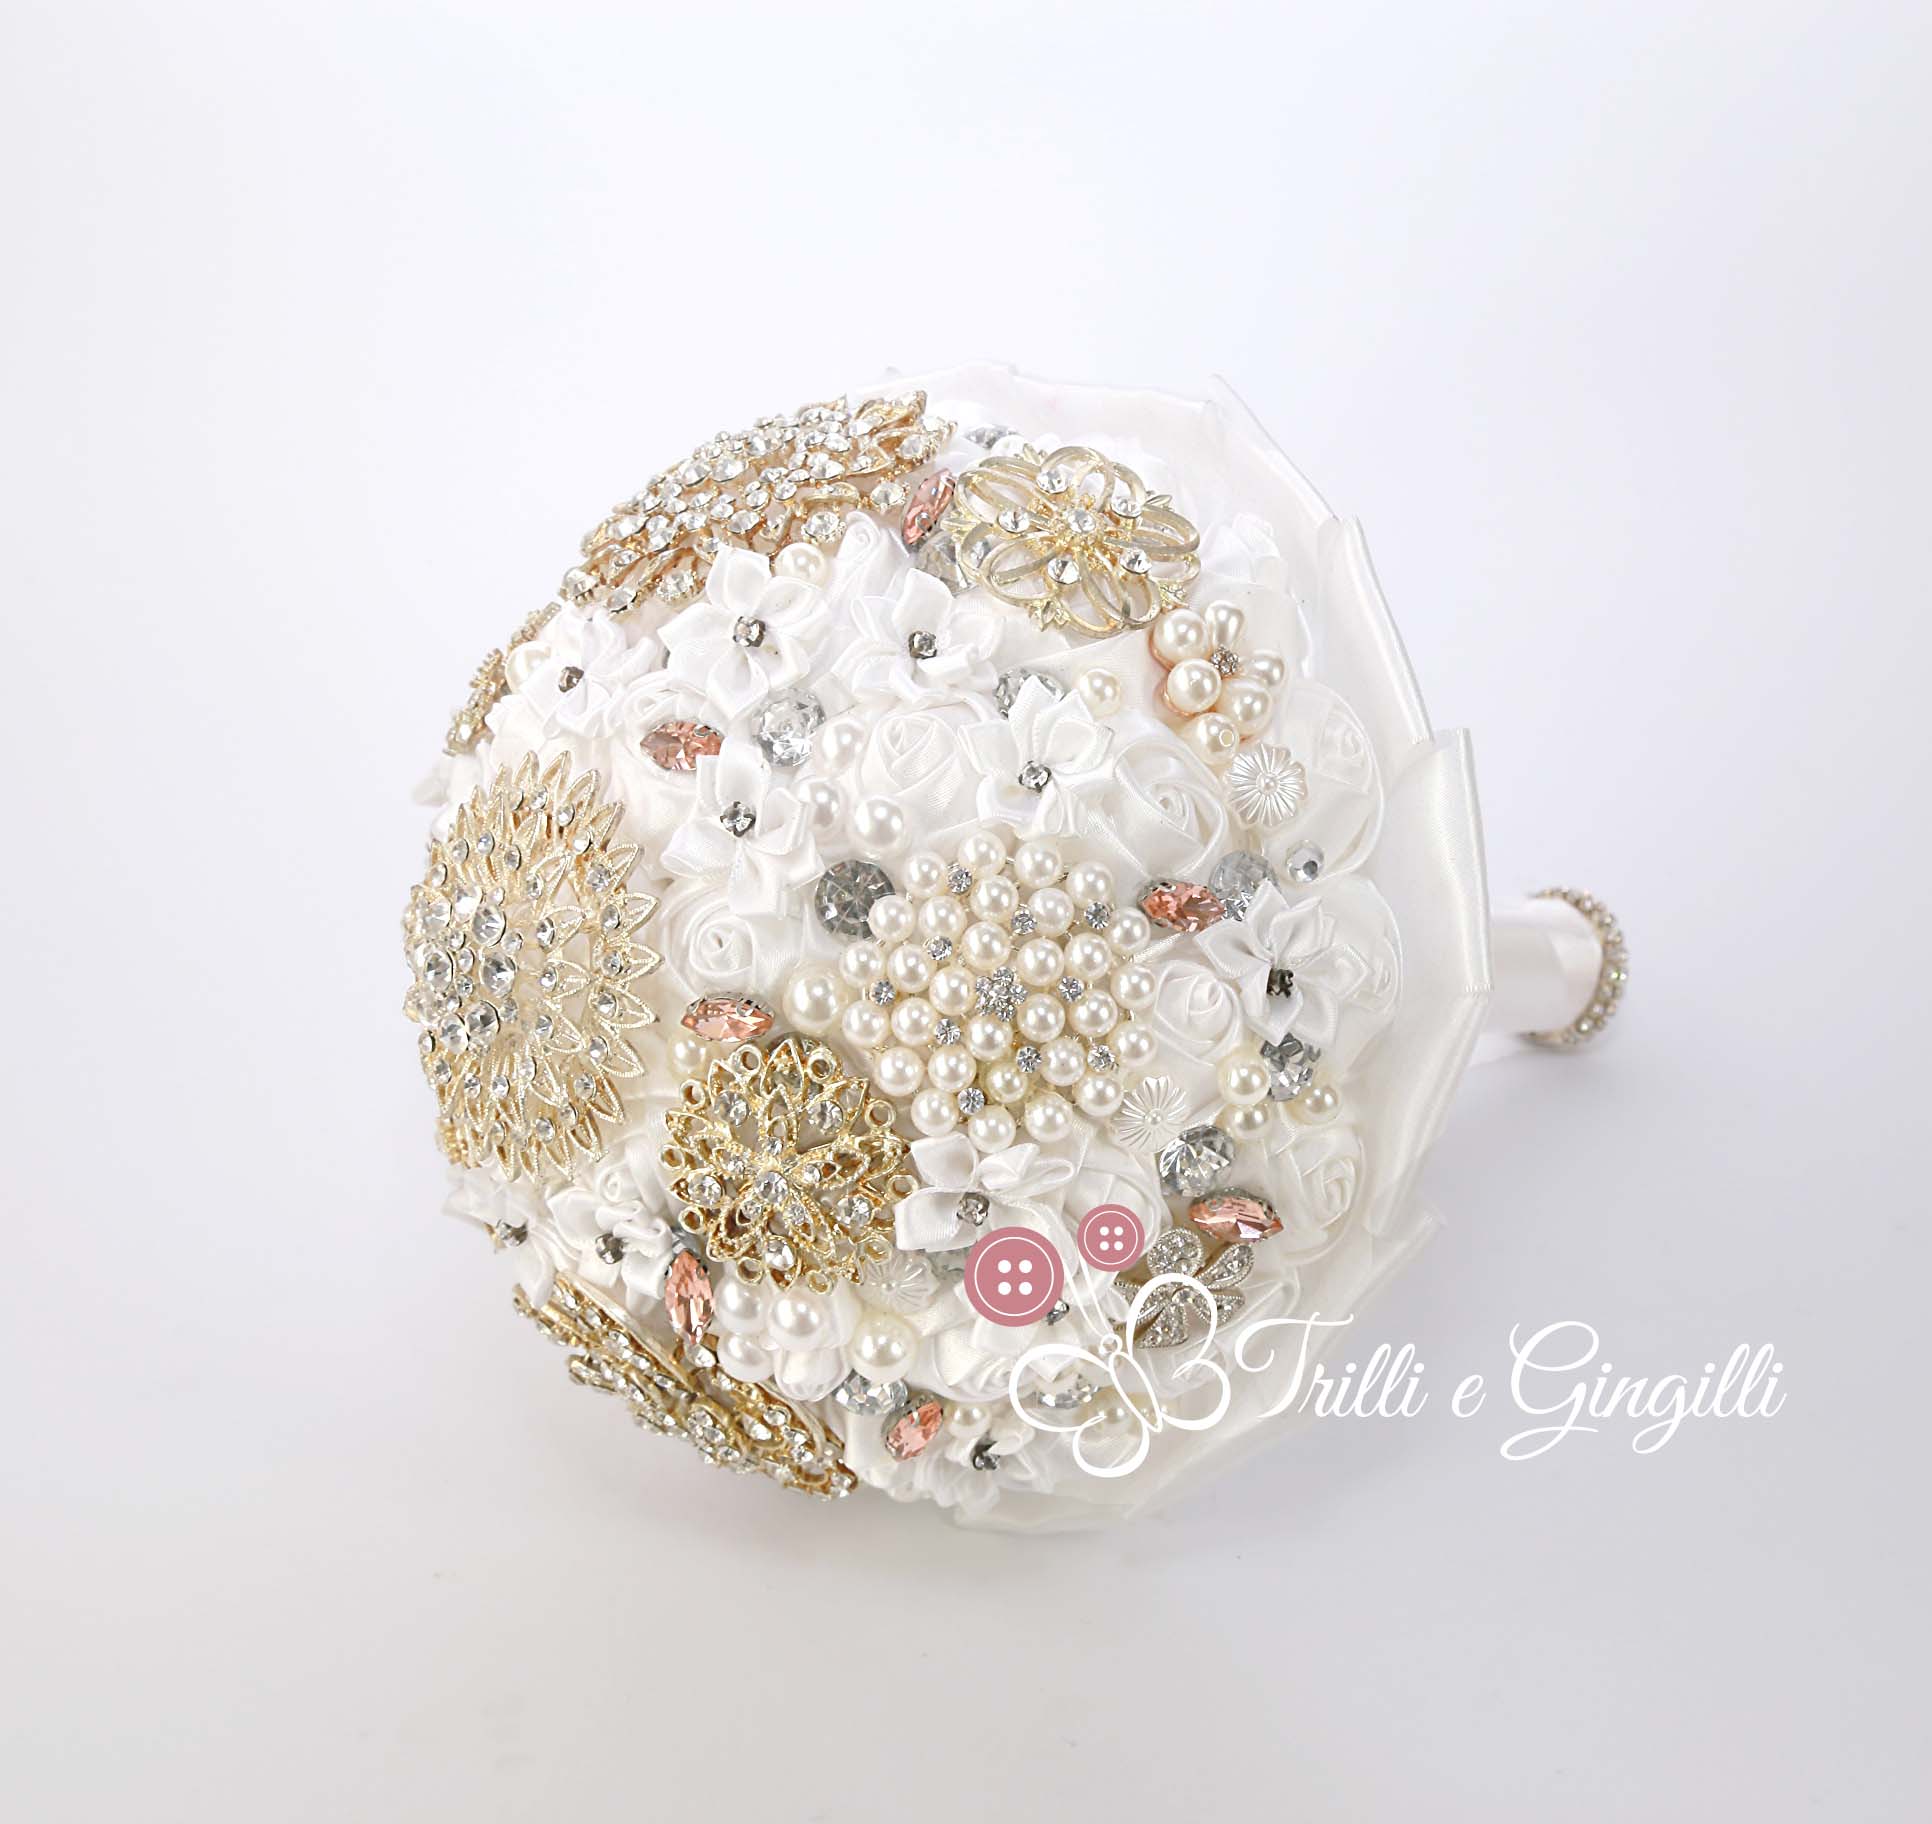 Bouquet Gioiello Bianco Con Perle E Strass Trilli E Gingilli